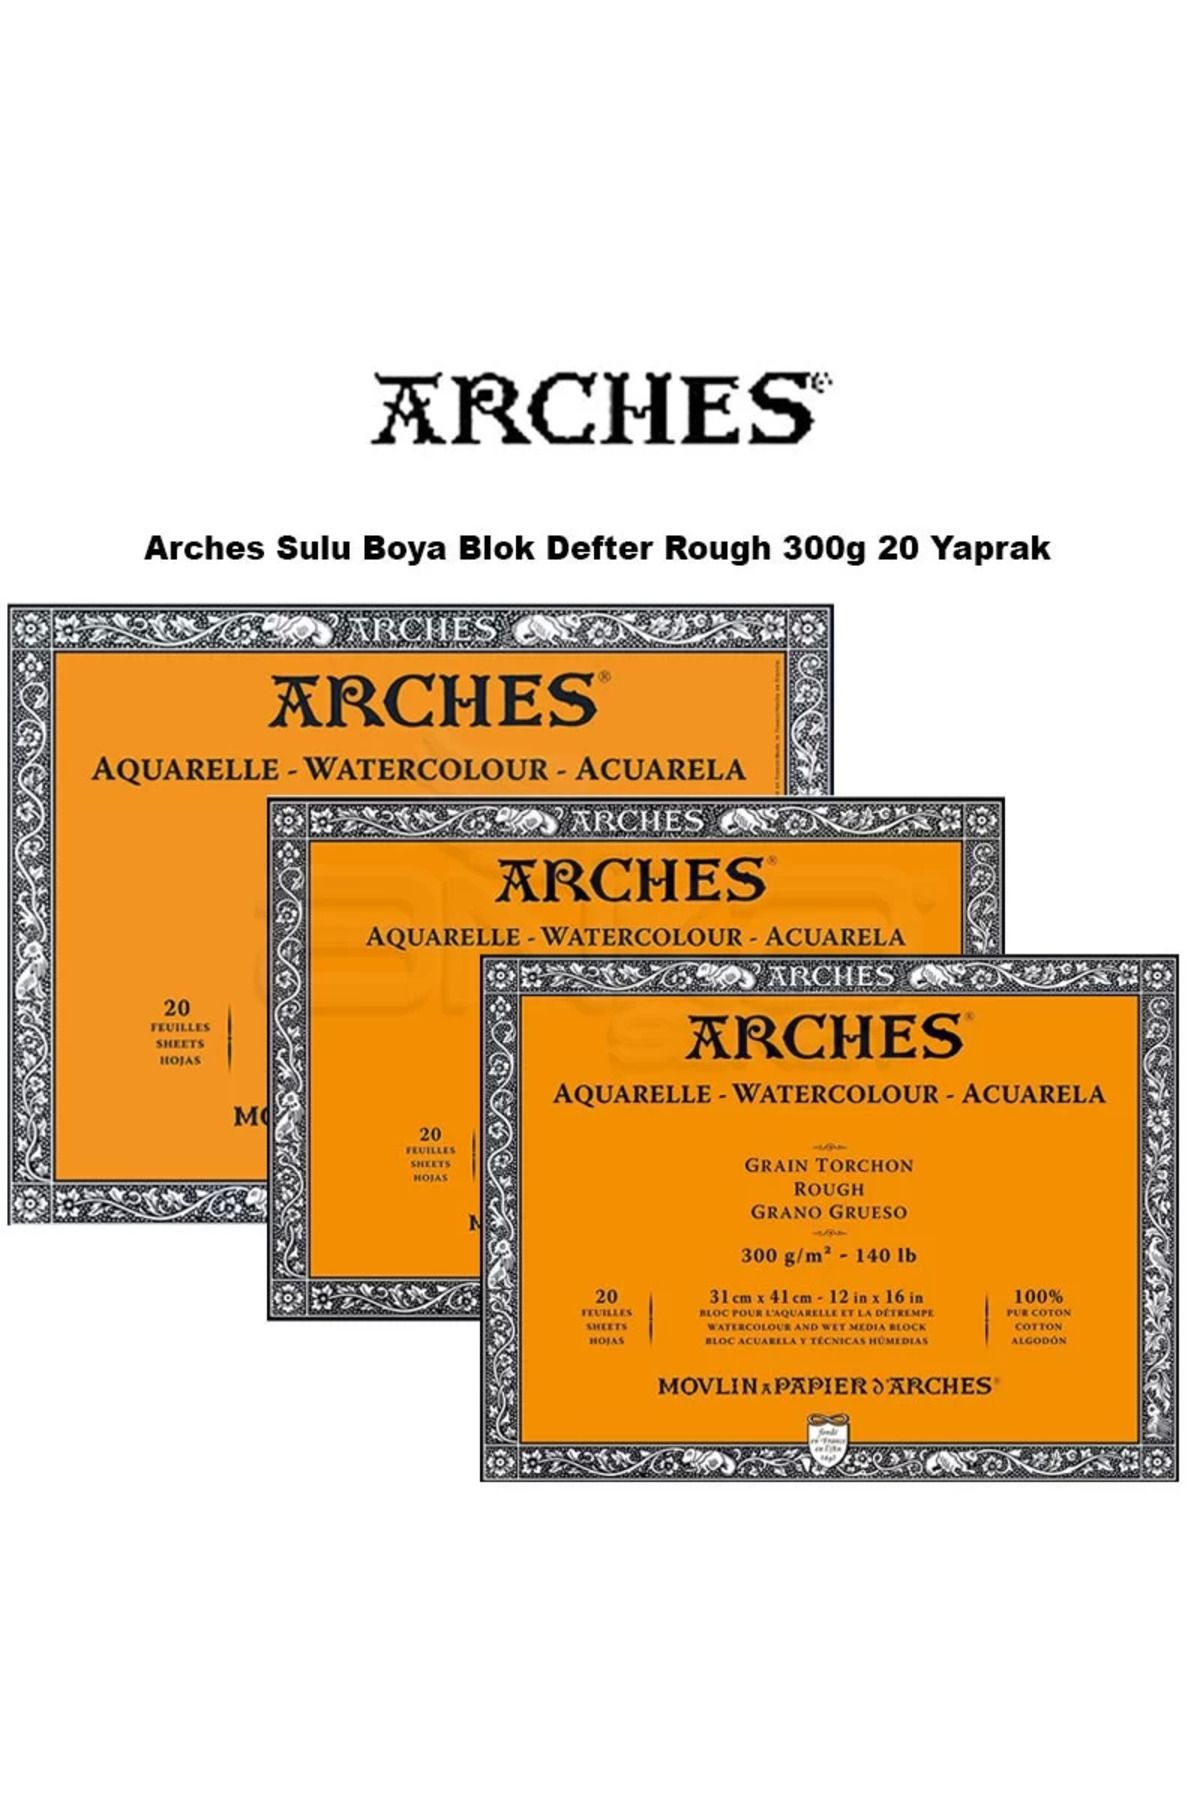 Arches Sulu Boya Blok Defter Rough 300g 20 Yaprak